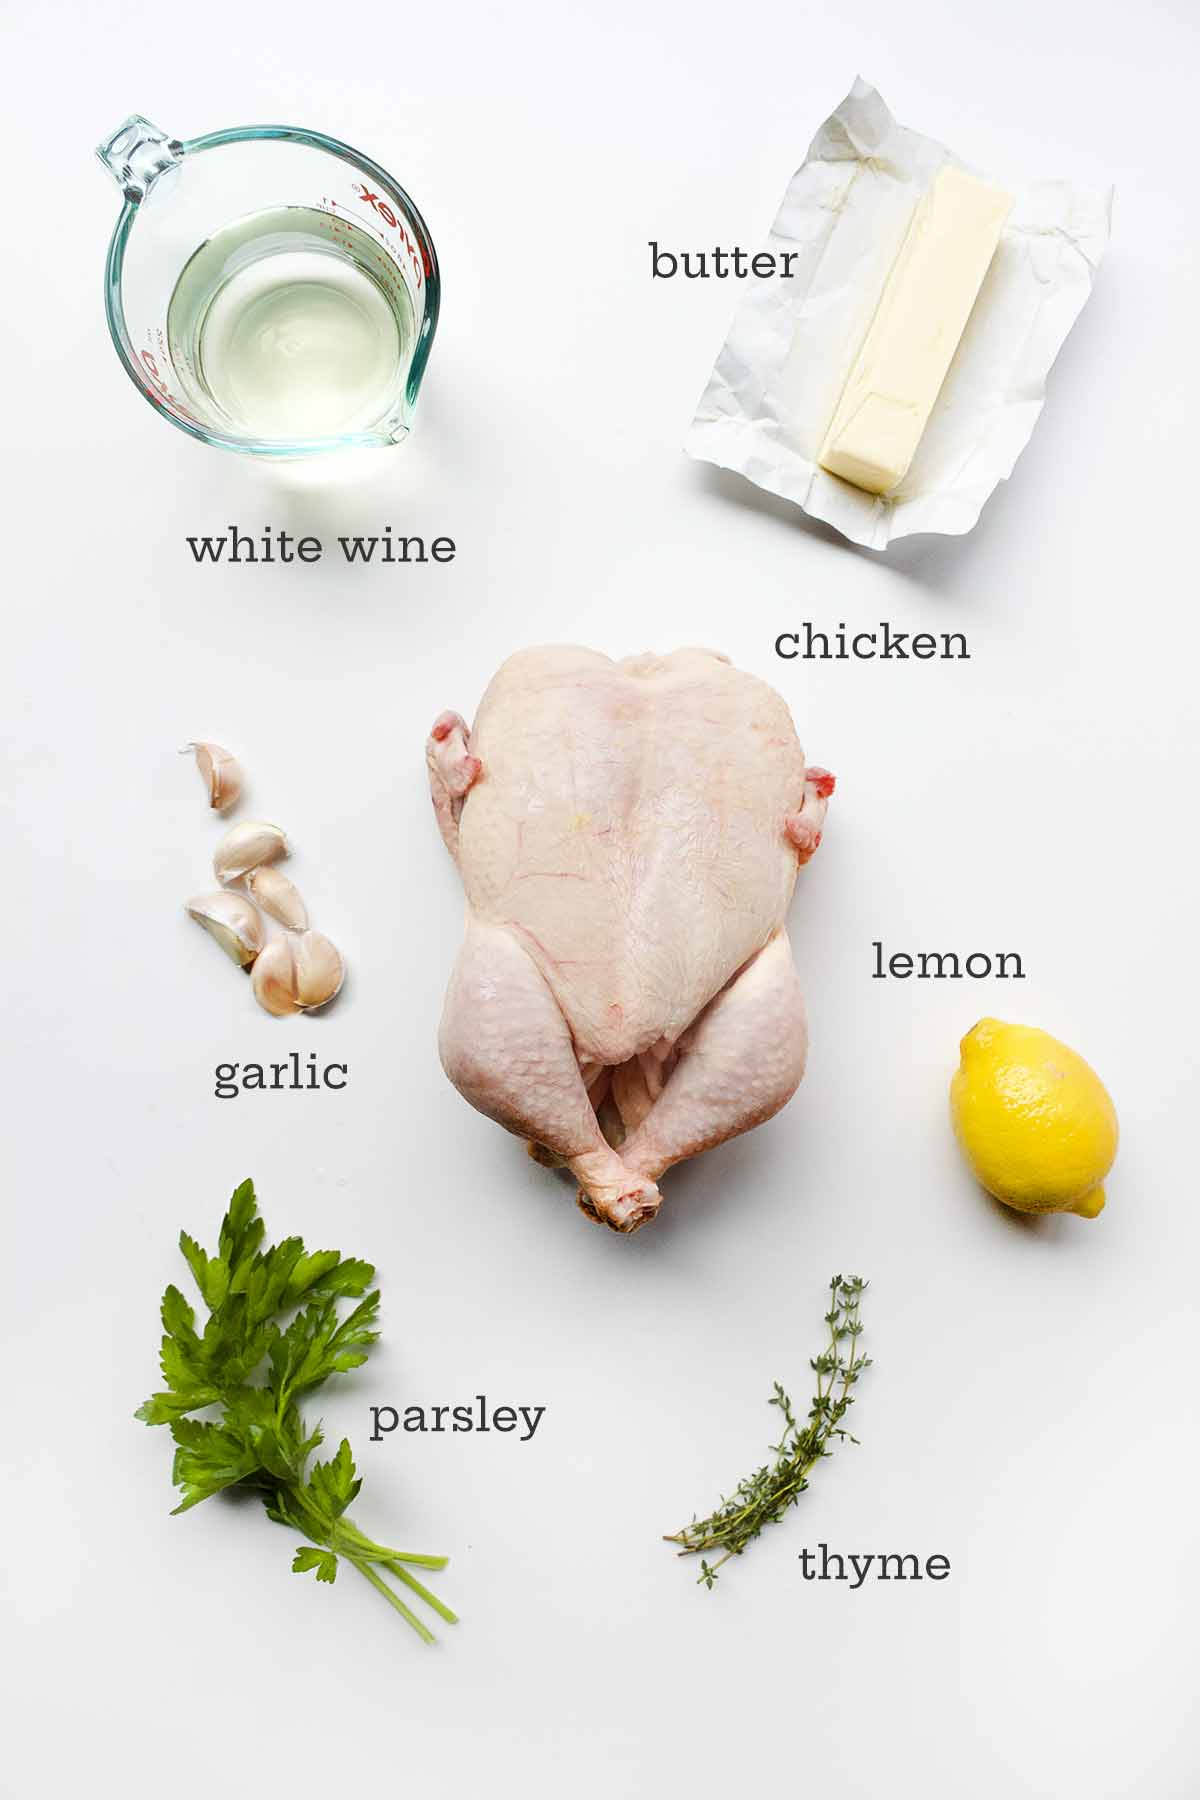 Ingredienser för spatchcockstek kyckling - kyckling, vin, smör, citron, vitlök, persilja och timjan.